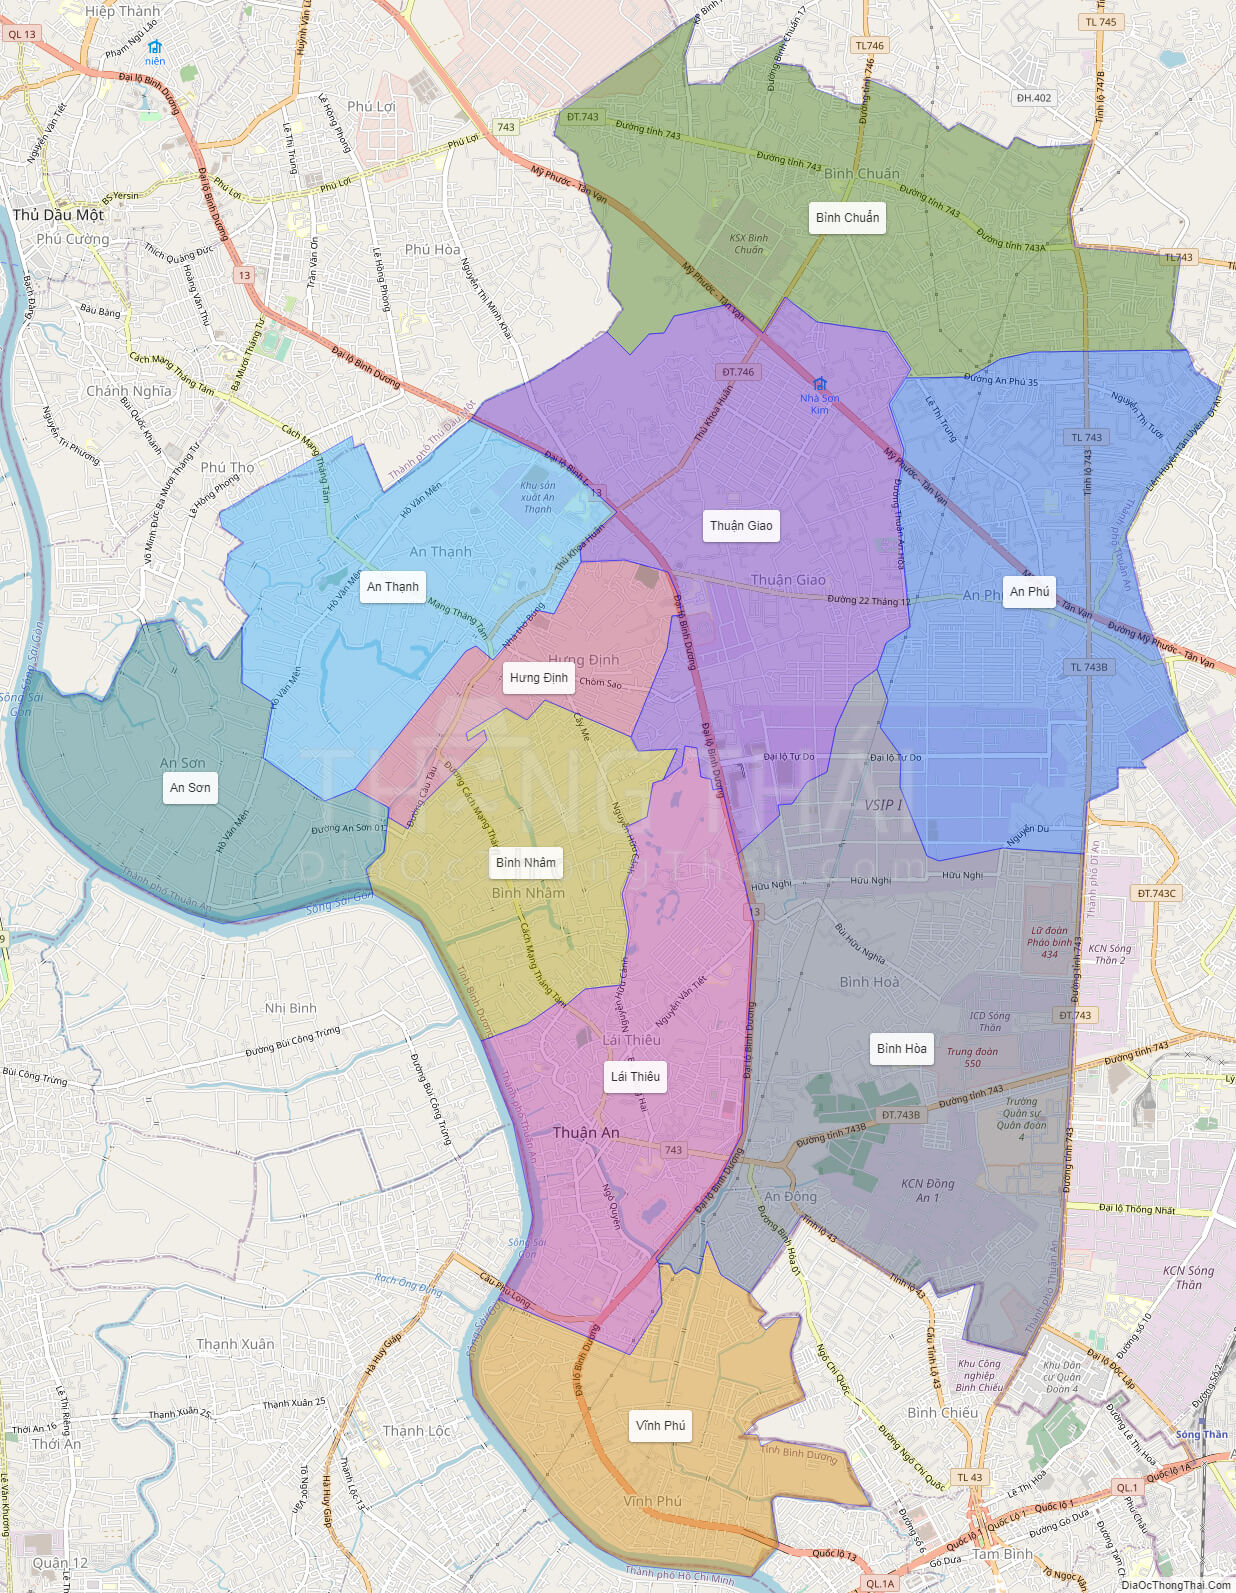 Bản đồ Thị xã Thuận An Bình Dương 2024 sẽ giúp du khách và người dân tìm hiểu chính xác về vị trí các địa điểm như bệnh viện, trung tâm thương mại, khu công nghiệp,... đồng thời cũng cung cấp thông tin chi tiết về quy hoạch và kế hoạch phát triển của địa phương.